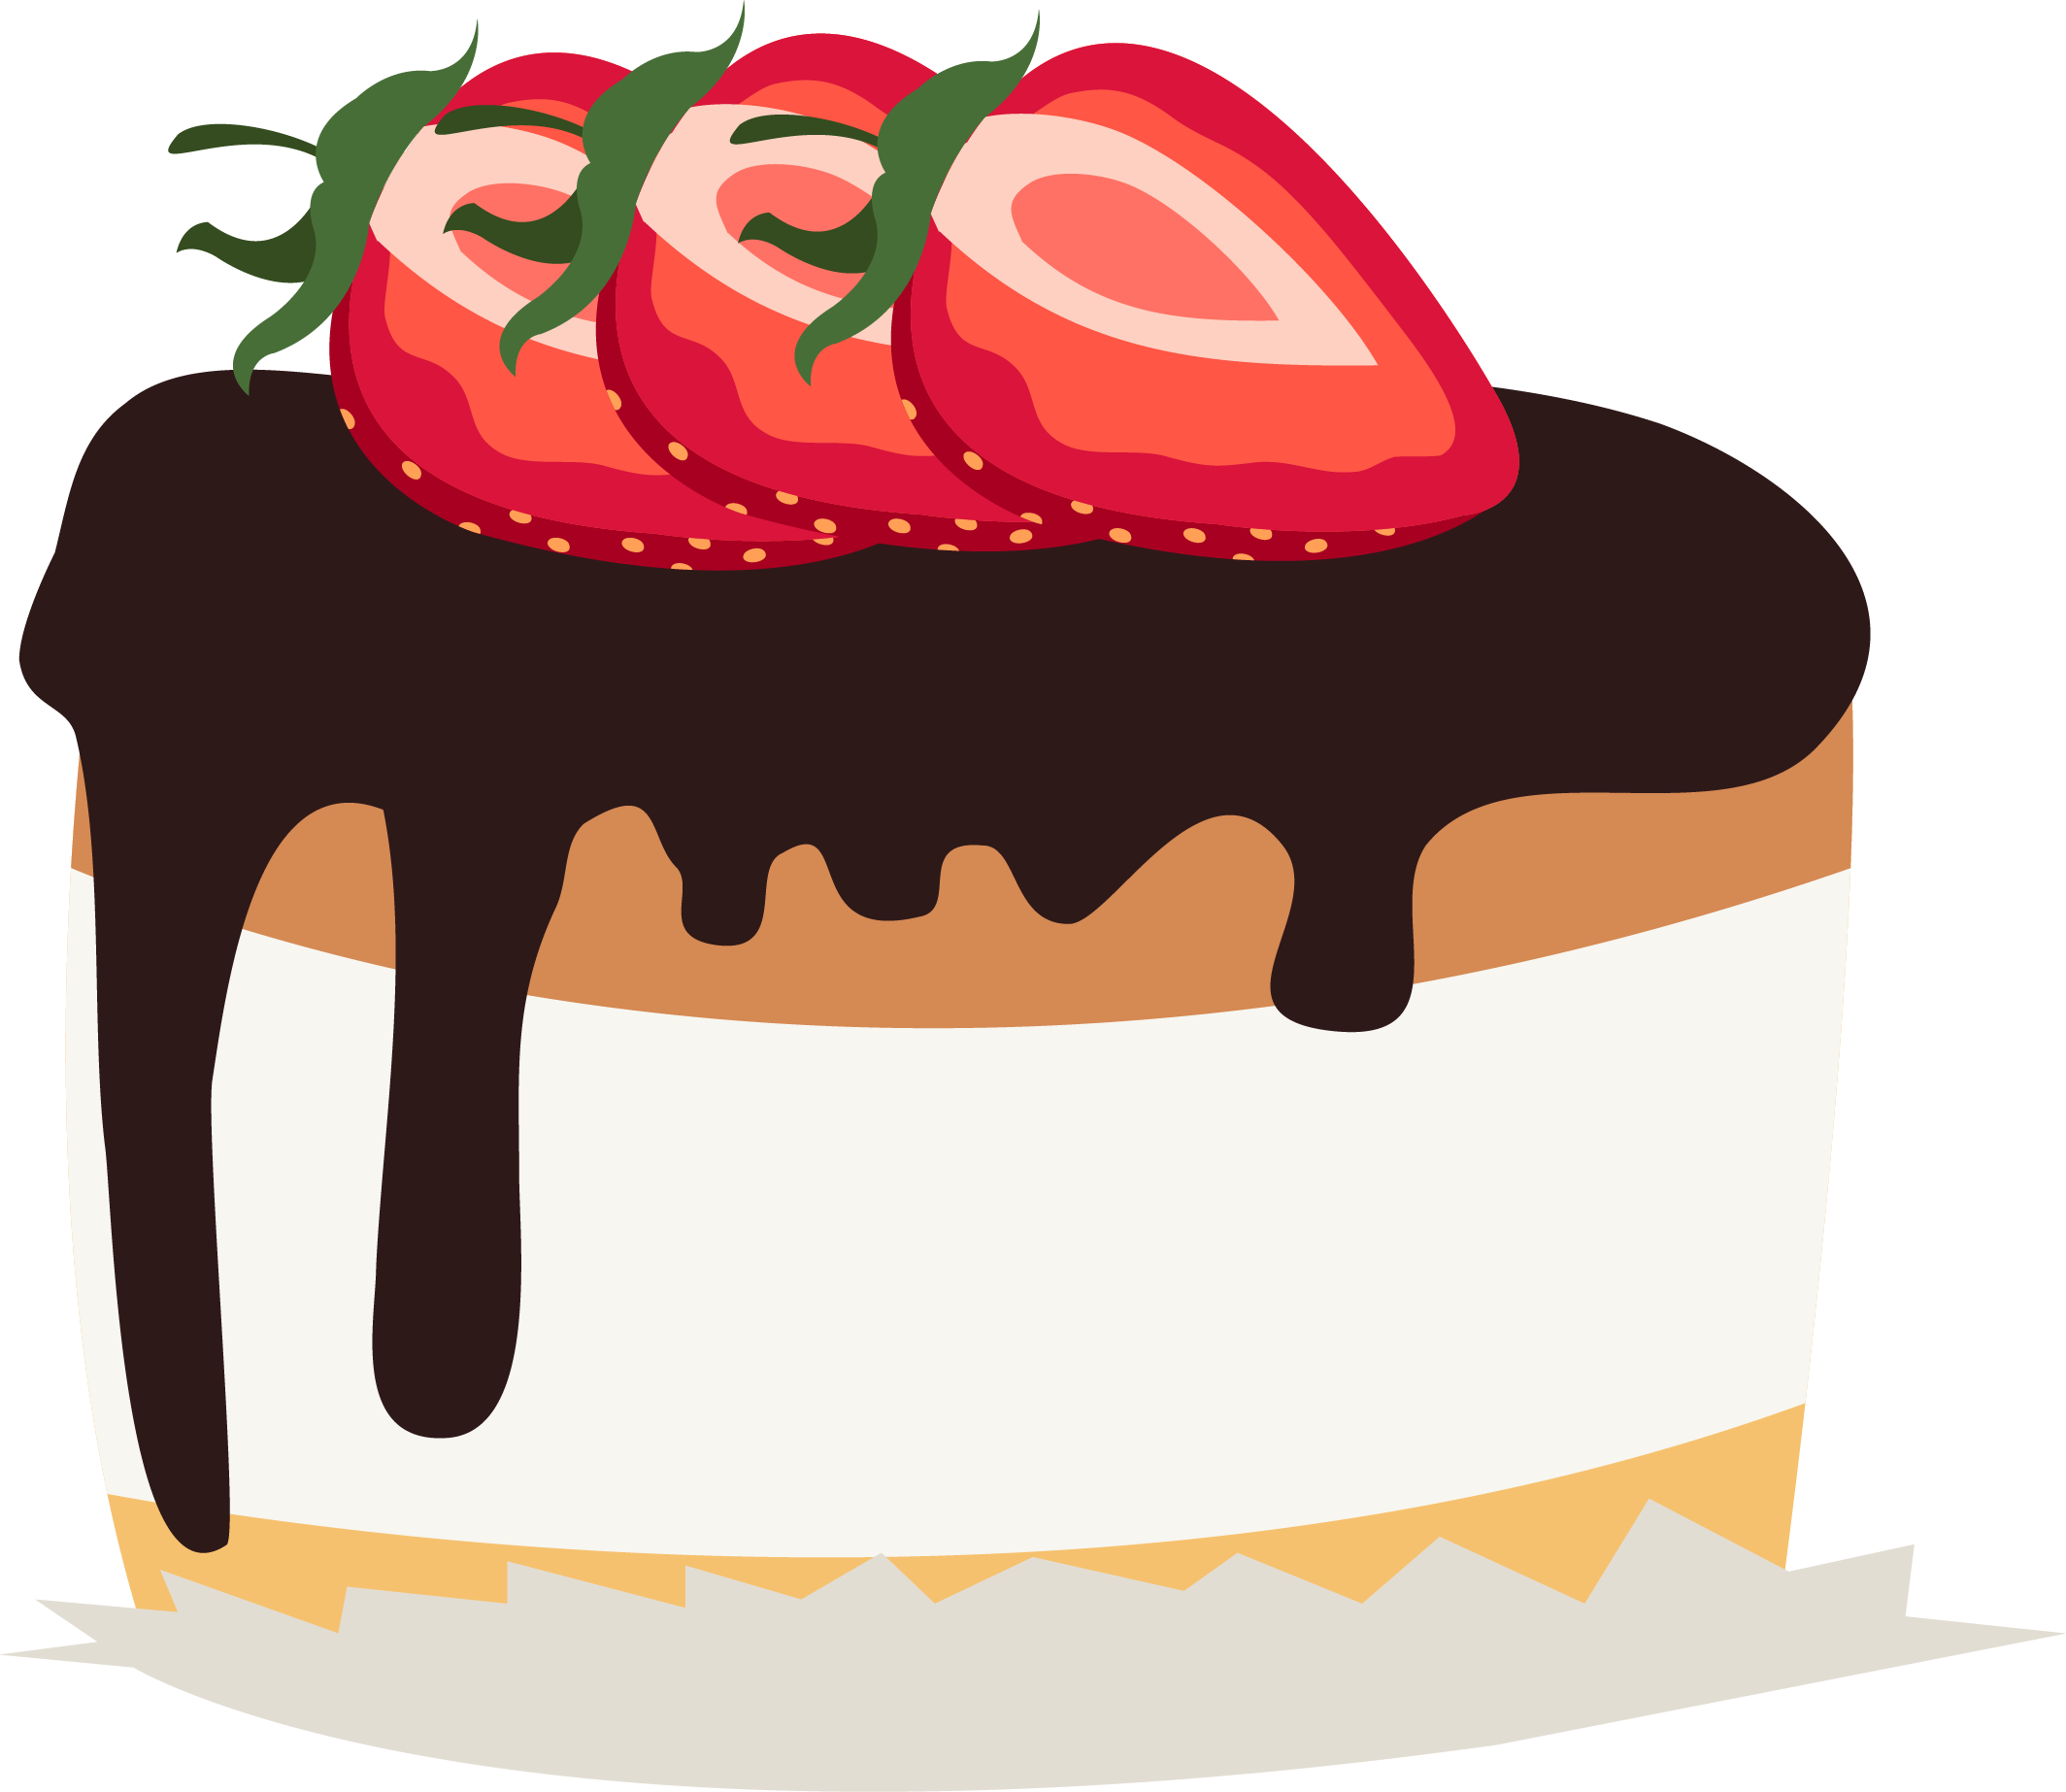 Chocolate Cake Strawberry Cream Cake Birthday Cake - Chocolate Cake Strawberry Cream Cake Birthday Cake (2128x1846)